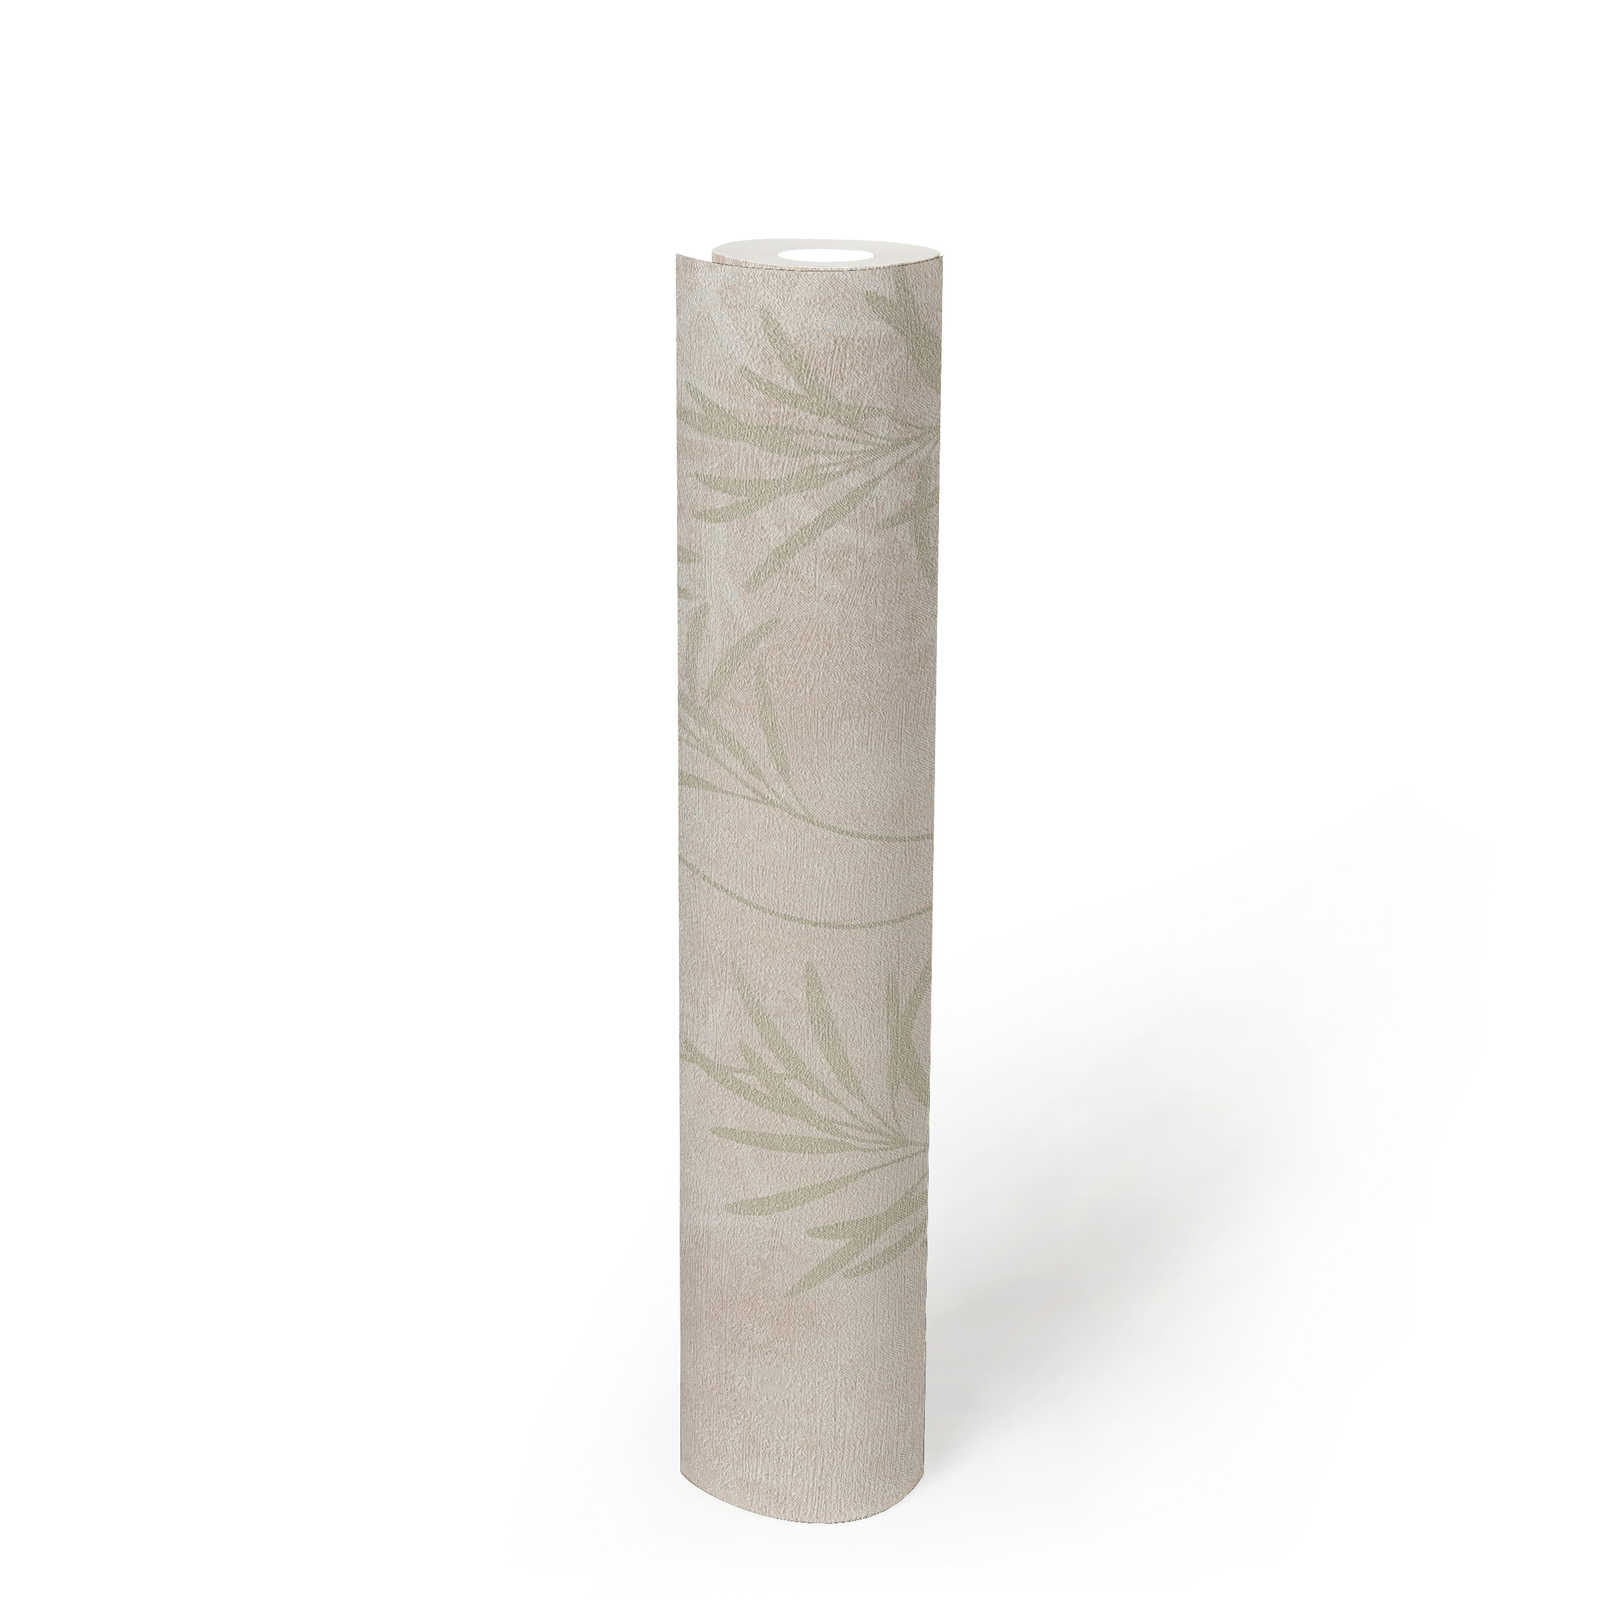             Scandinavisch vliesbehang met bloemengrassen - crème, groen, metallic
        